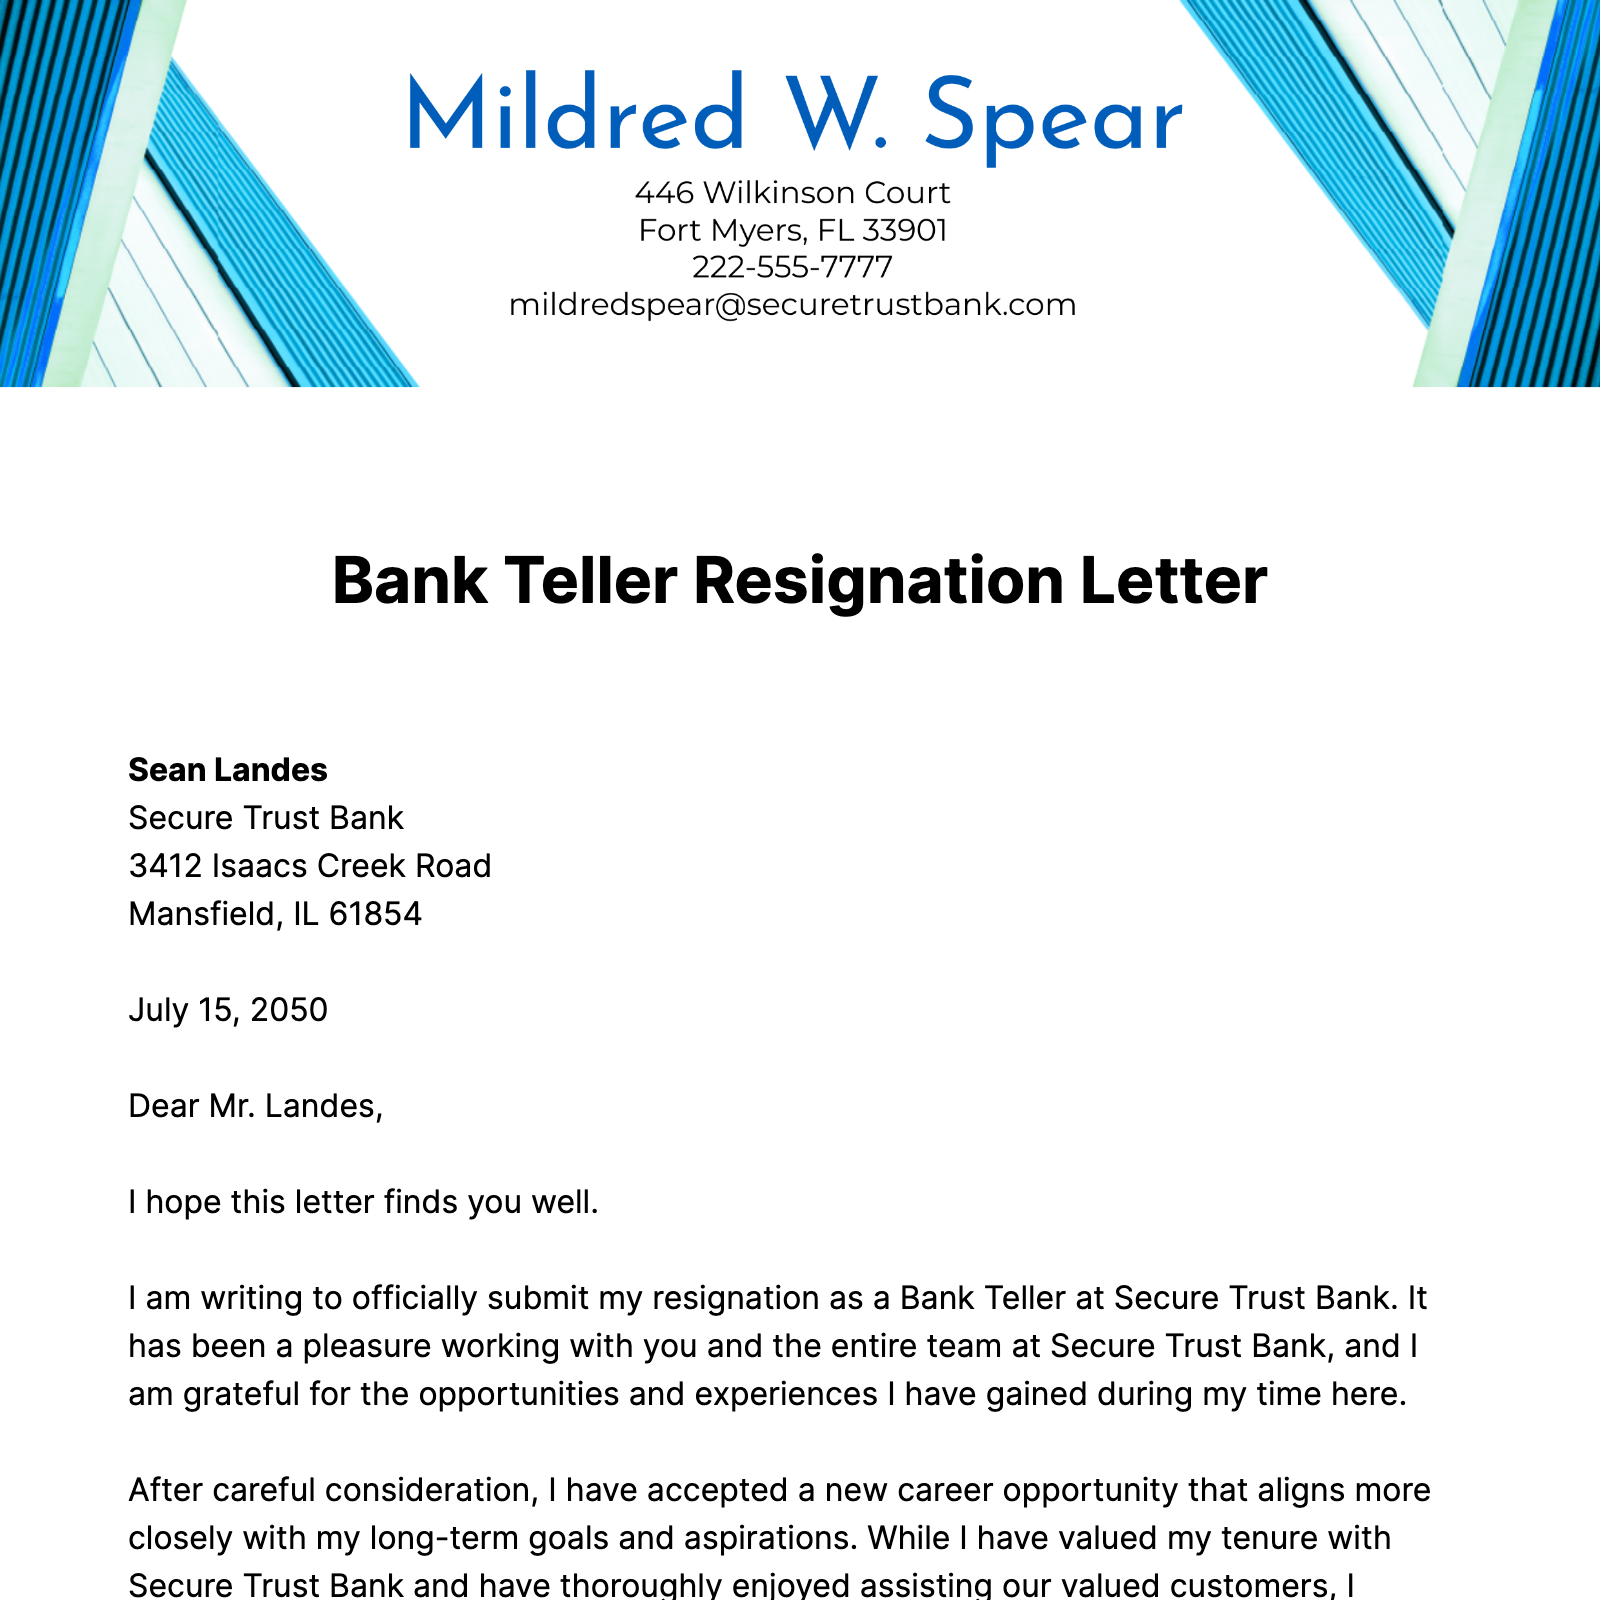 Bank Teller Resignation Letter  Template